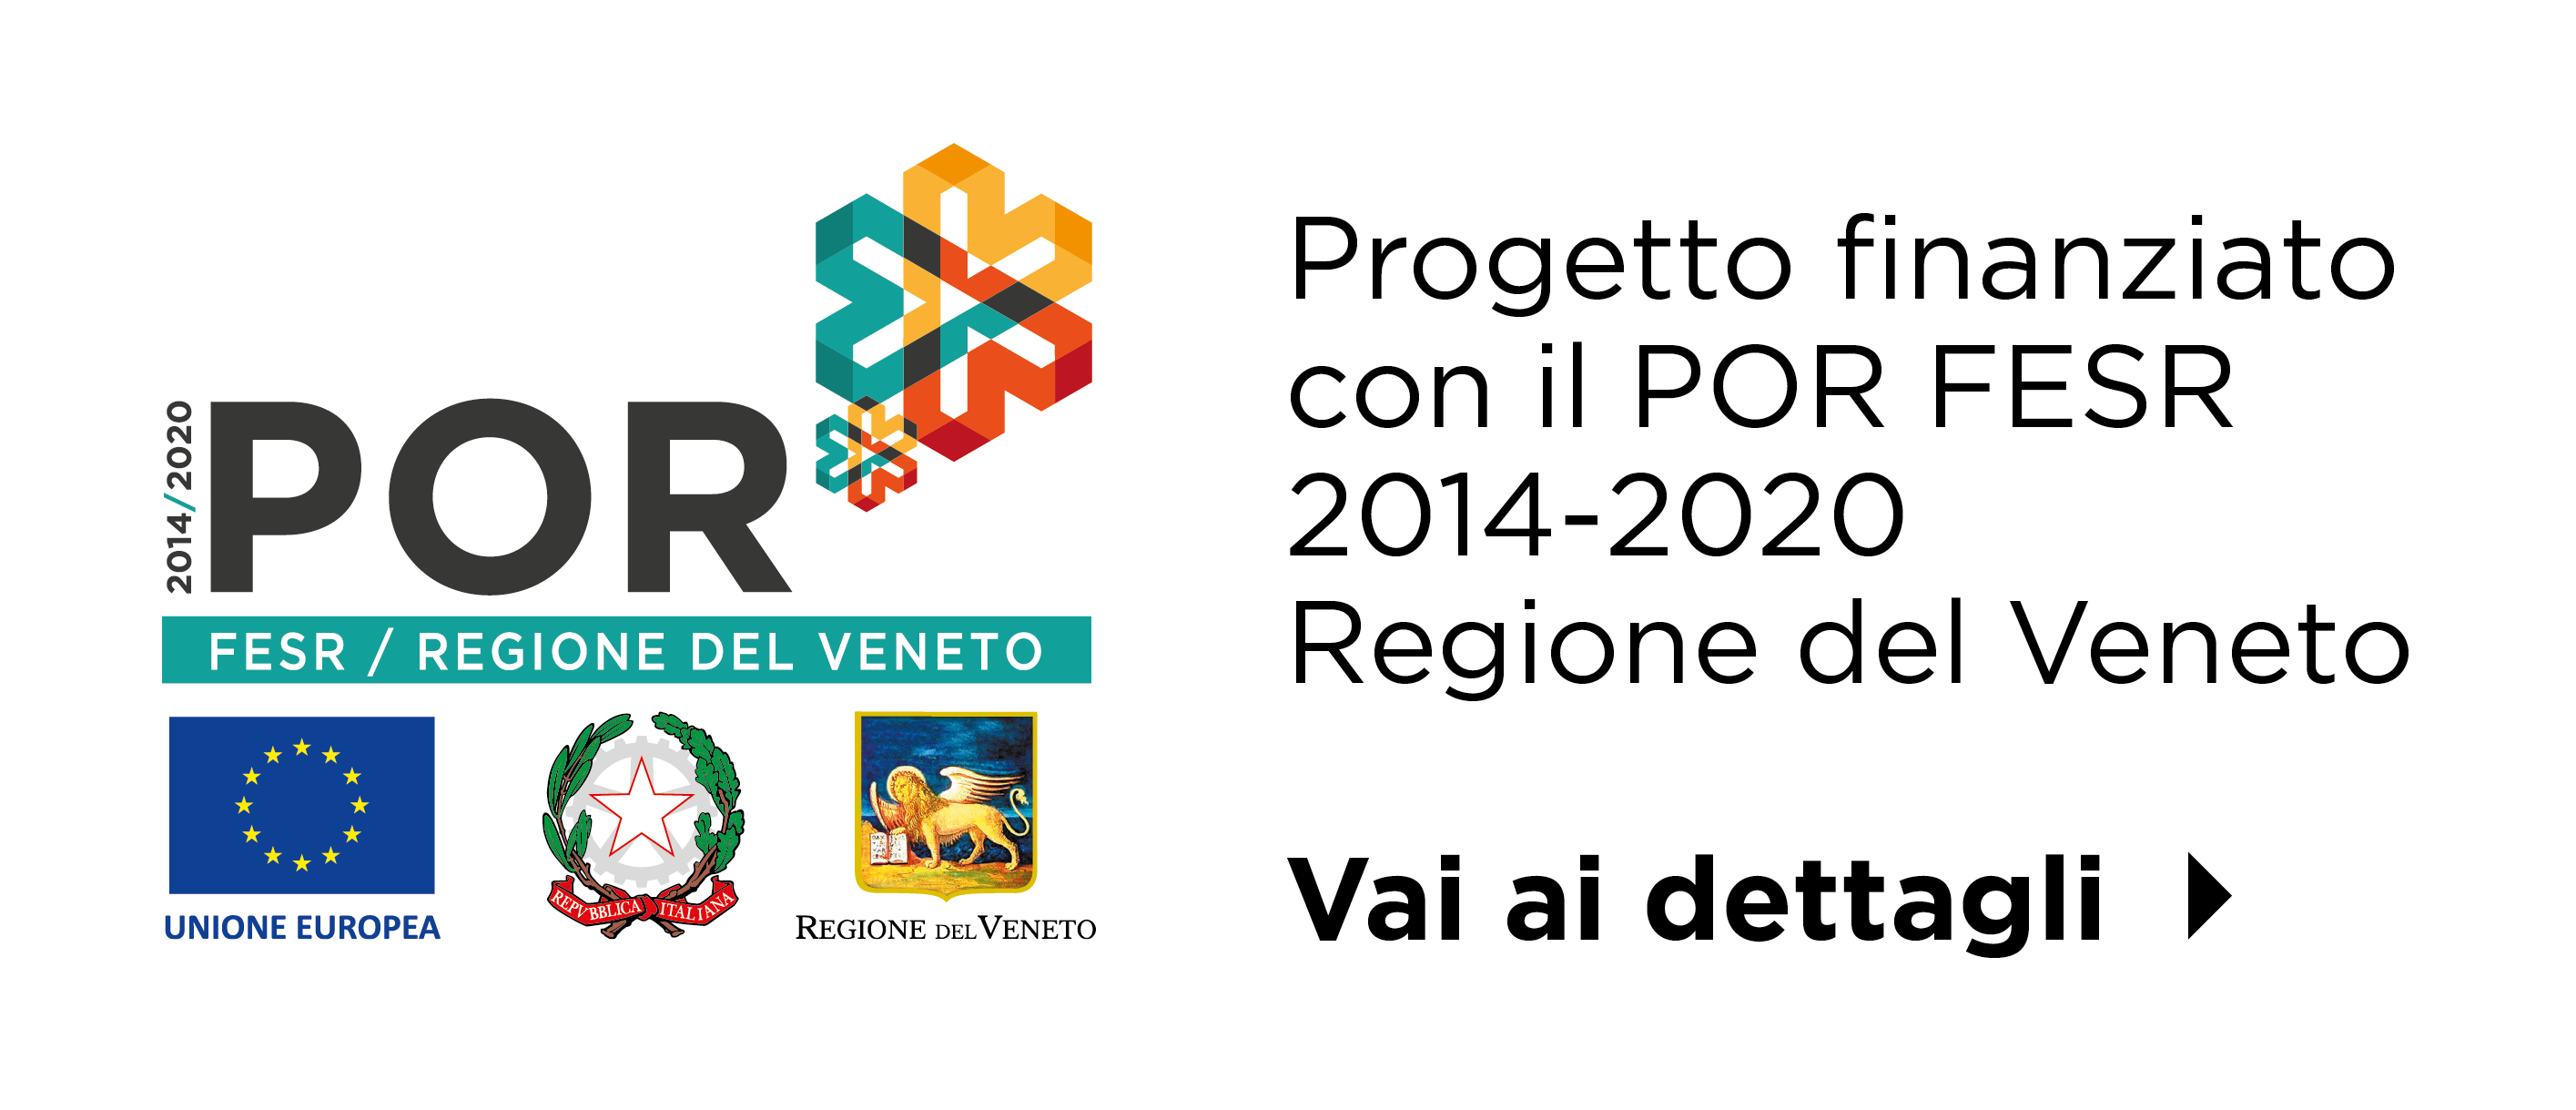 Progetto finanziato con il POR FESR 2014-2020 Regione del Veneto